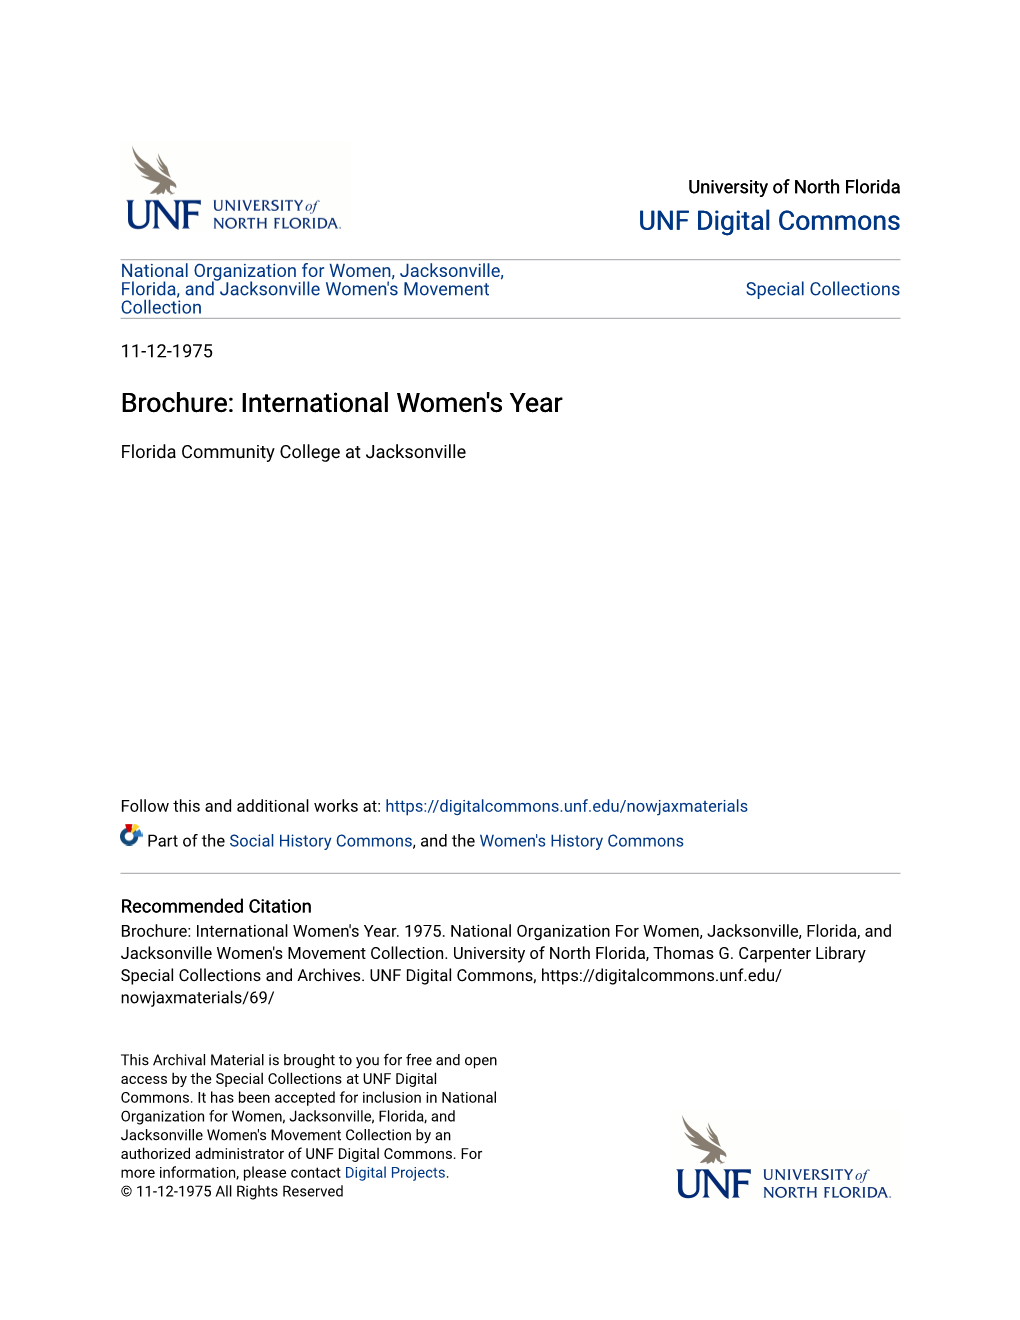 Brochure: International Women's Year